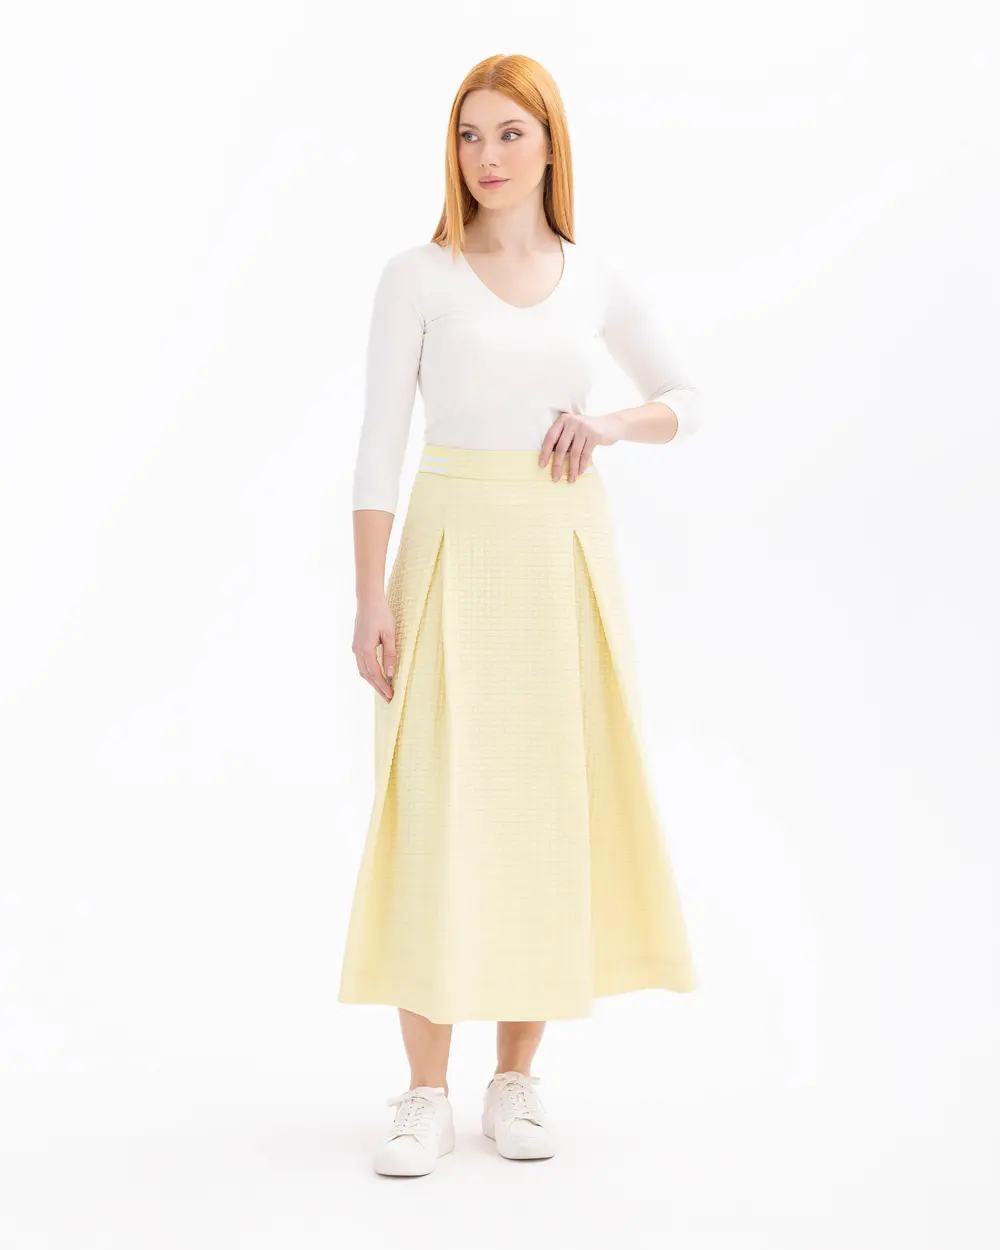 Pocket Detailed Zippered Skirt